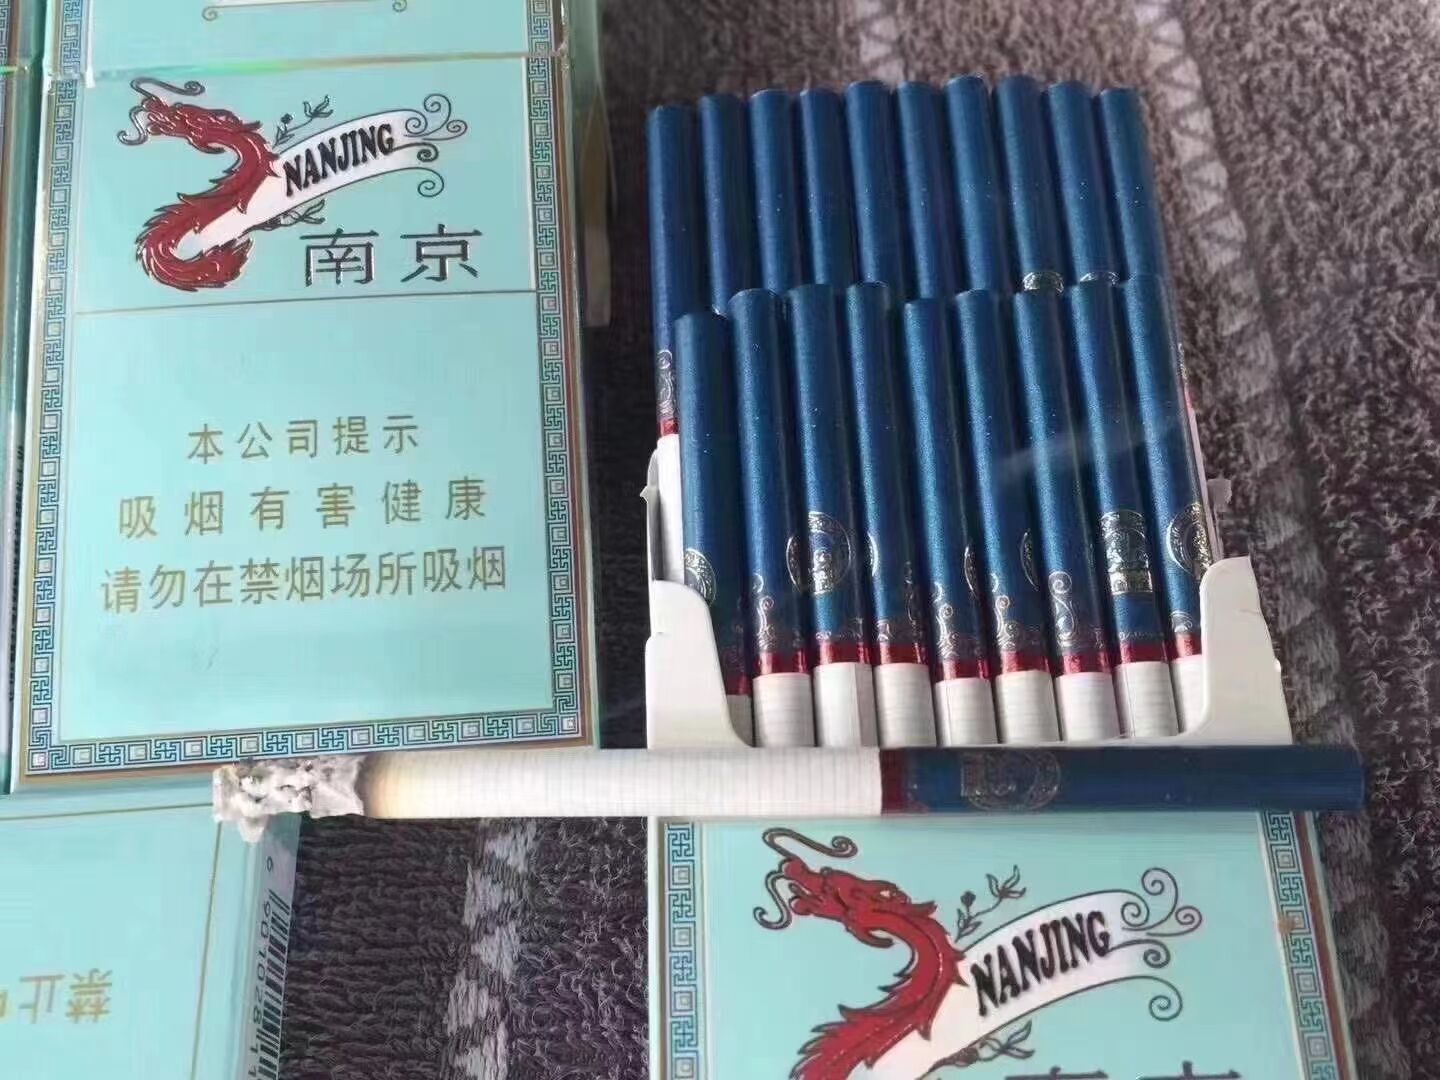 这是第7张越南出口外烟广西越南代工烟正品香烟云霄国烟免税烟一手货源批发代理的货源图片